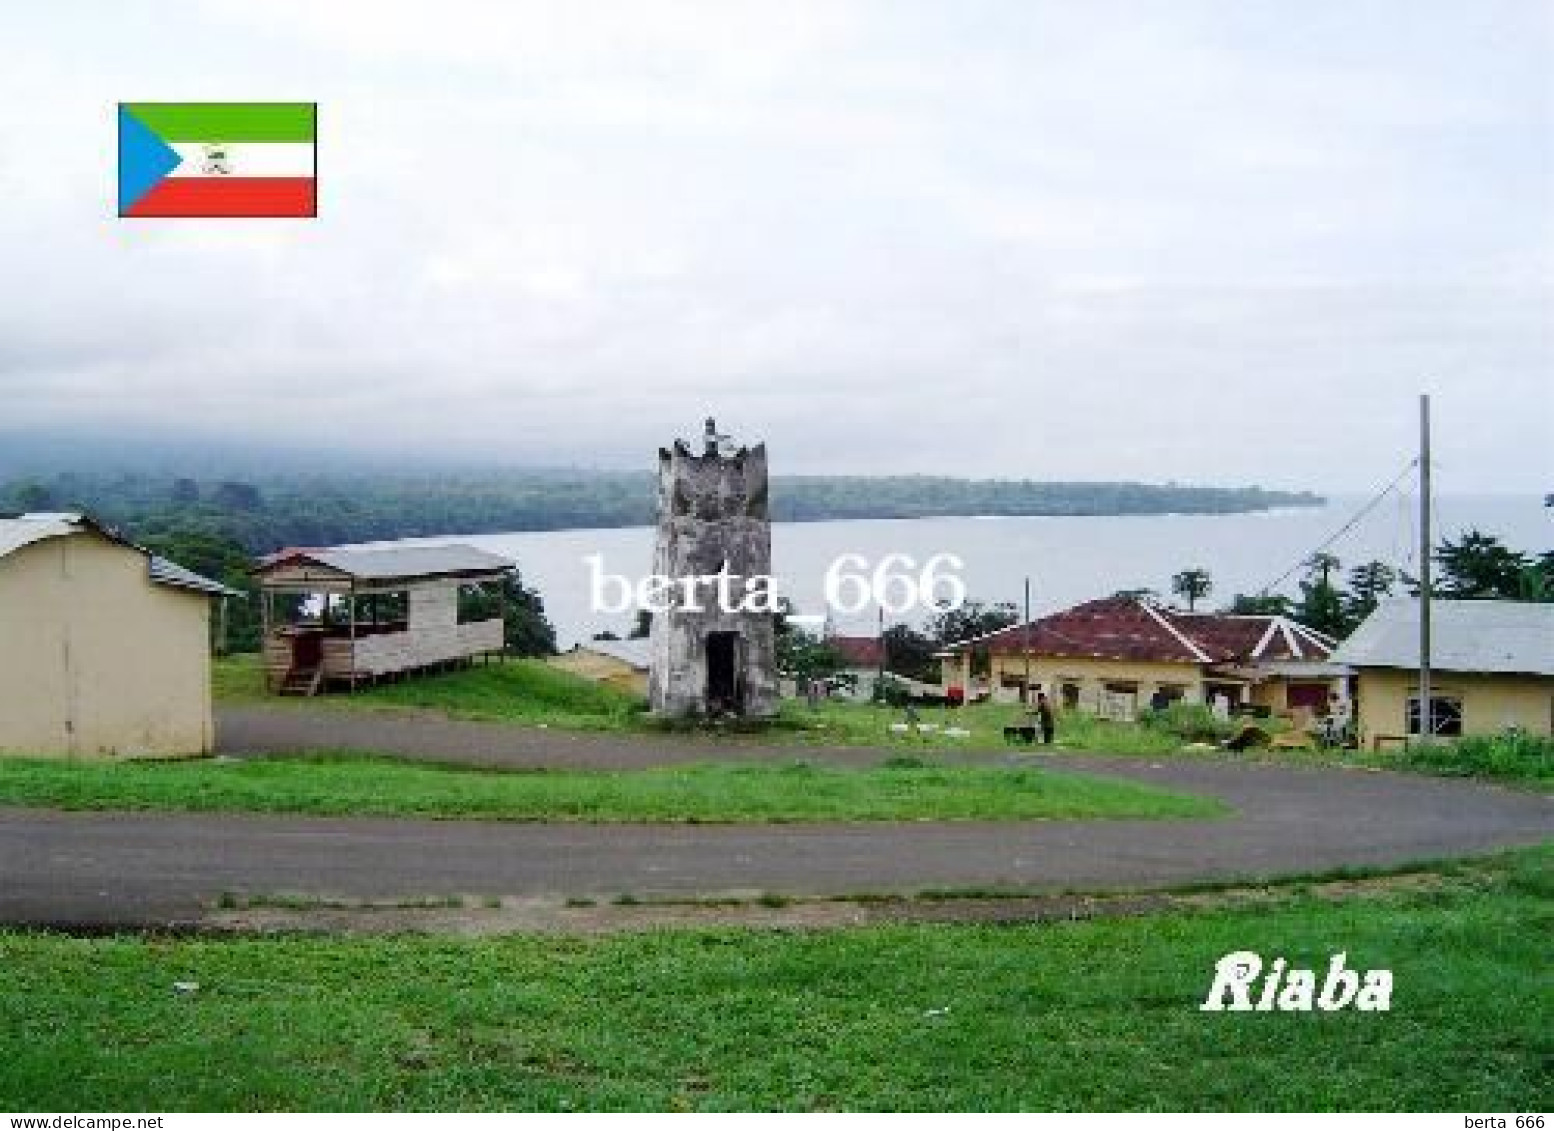 Equatorial Guinea Riaba Lighthouse New Postcard - Guinea Ecuatorial